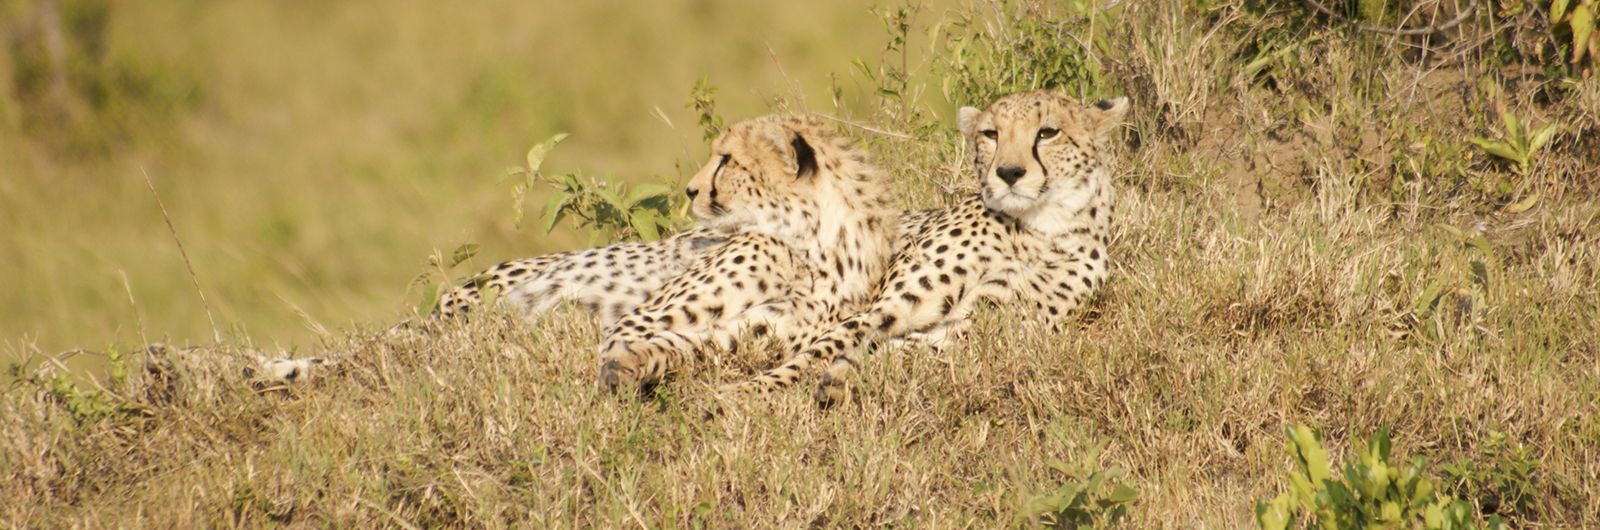 guepardos kenia